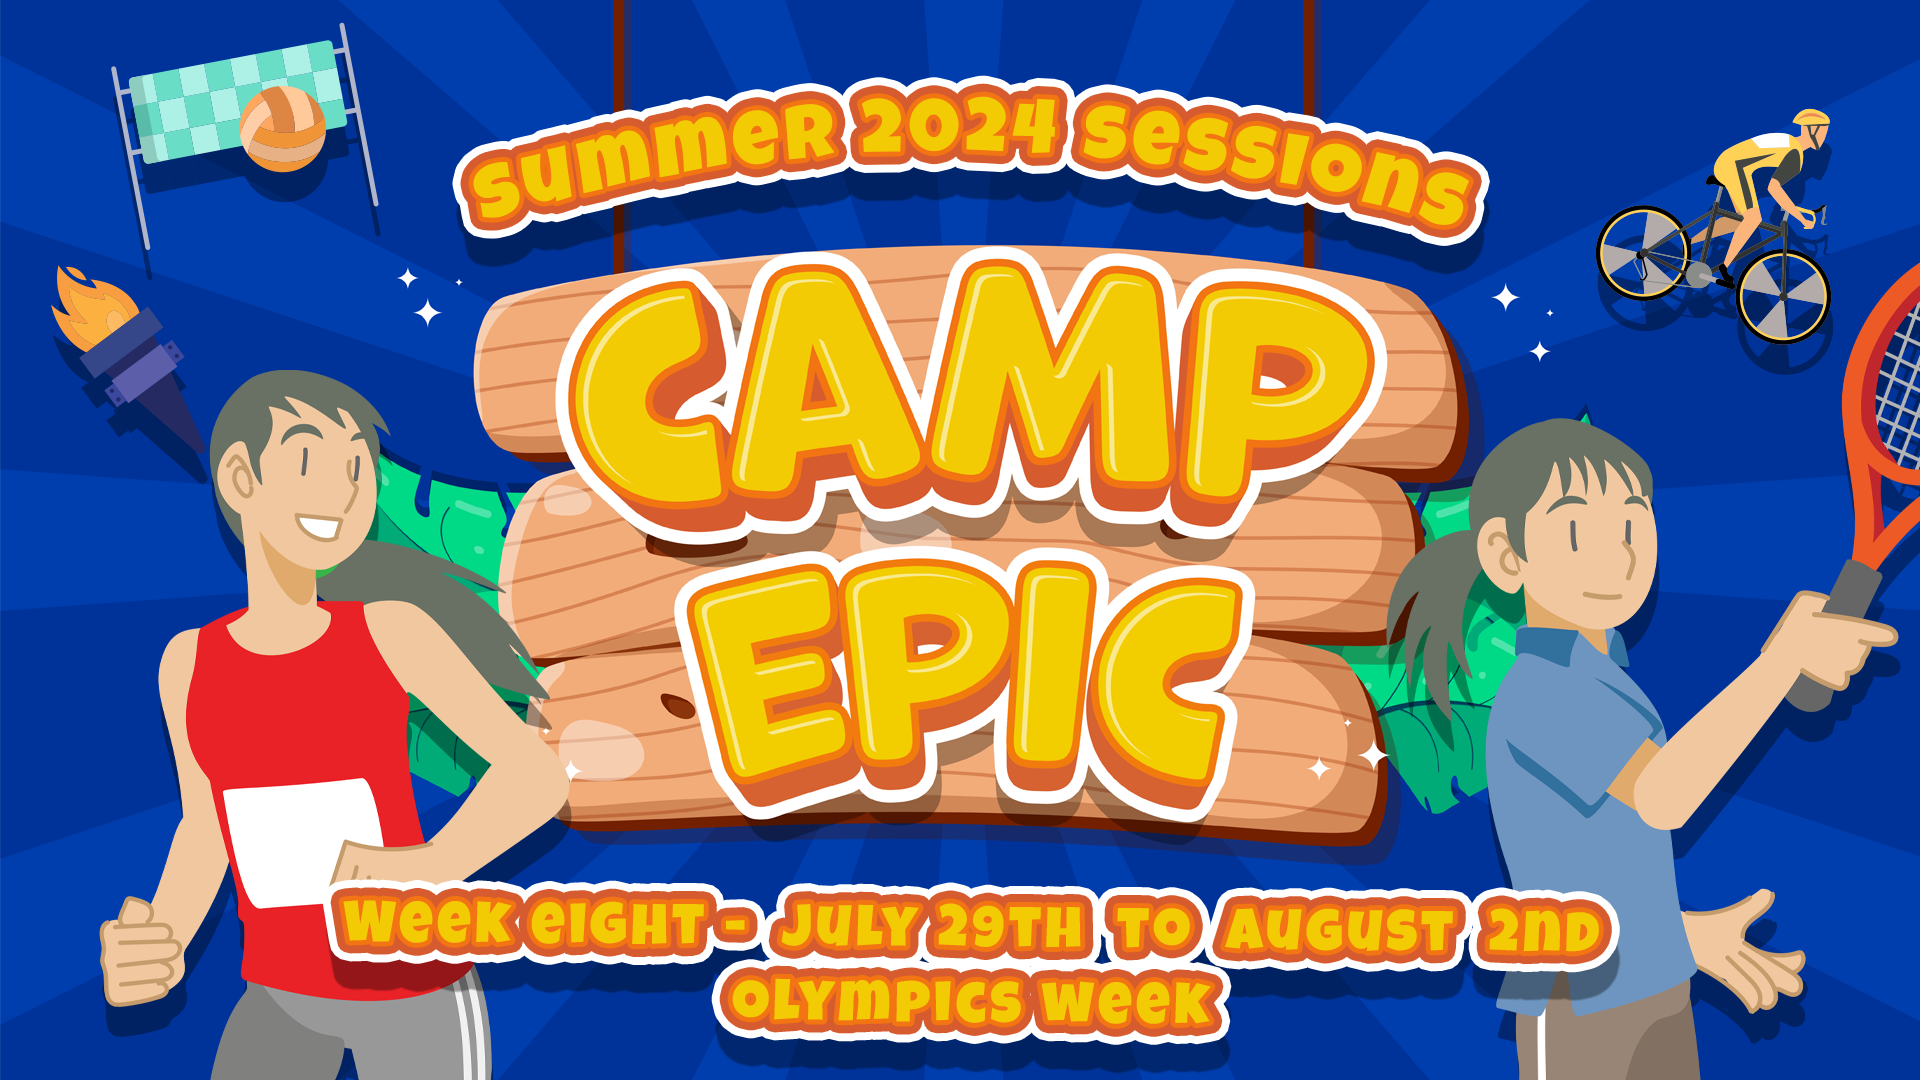 Camp Epic Week 8